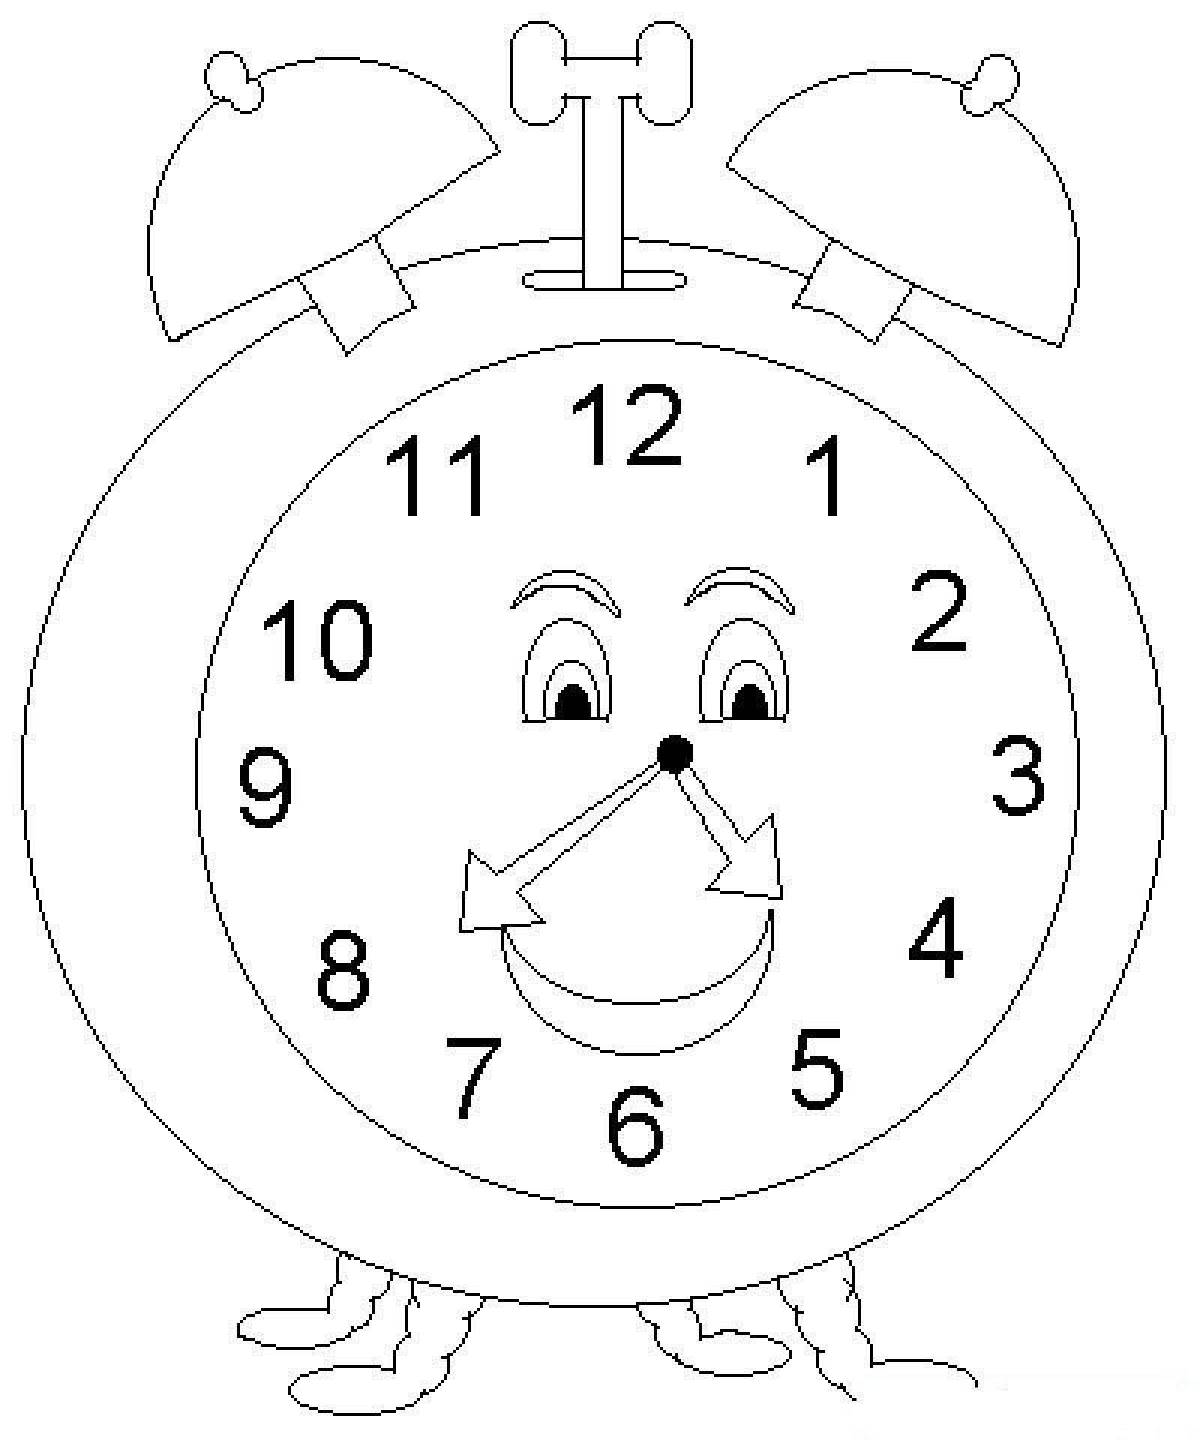 Раскраски часов для детей. Часы раскраска. Часы раскраска для детей. Часы для раскрашивания для детей. Трафарет часов для детей.